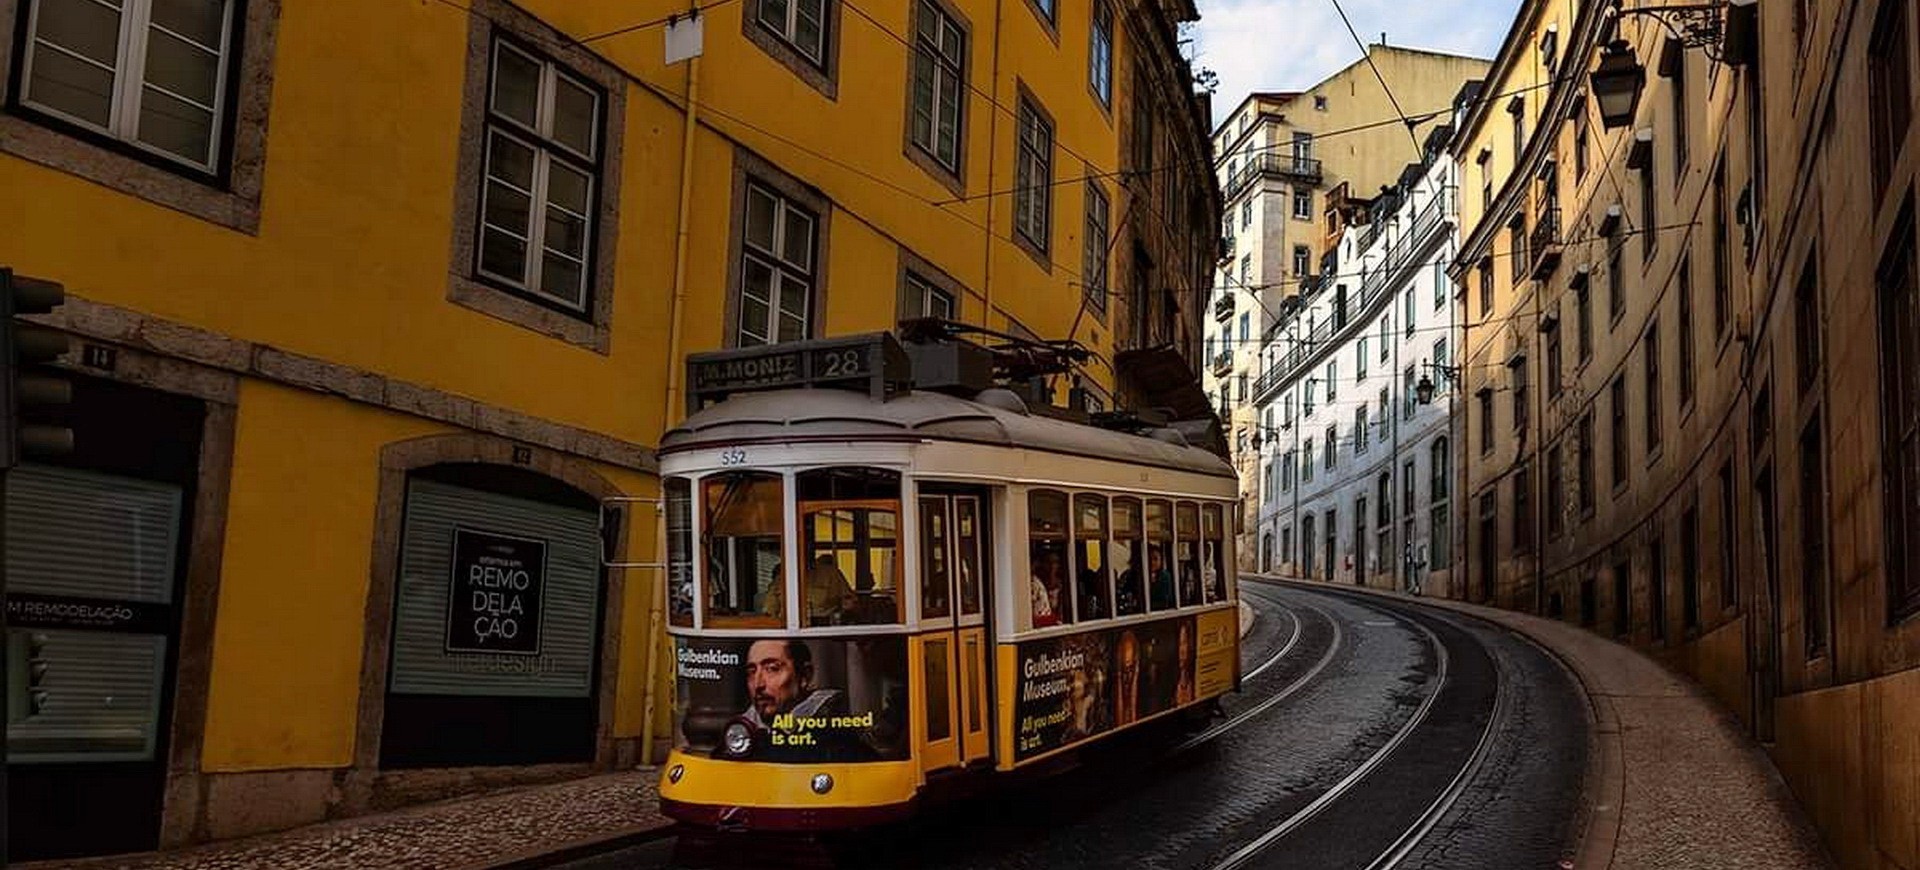 Portugal Lisbonne Trame